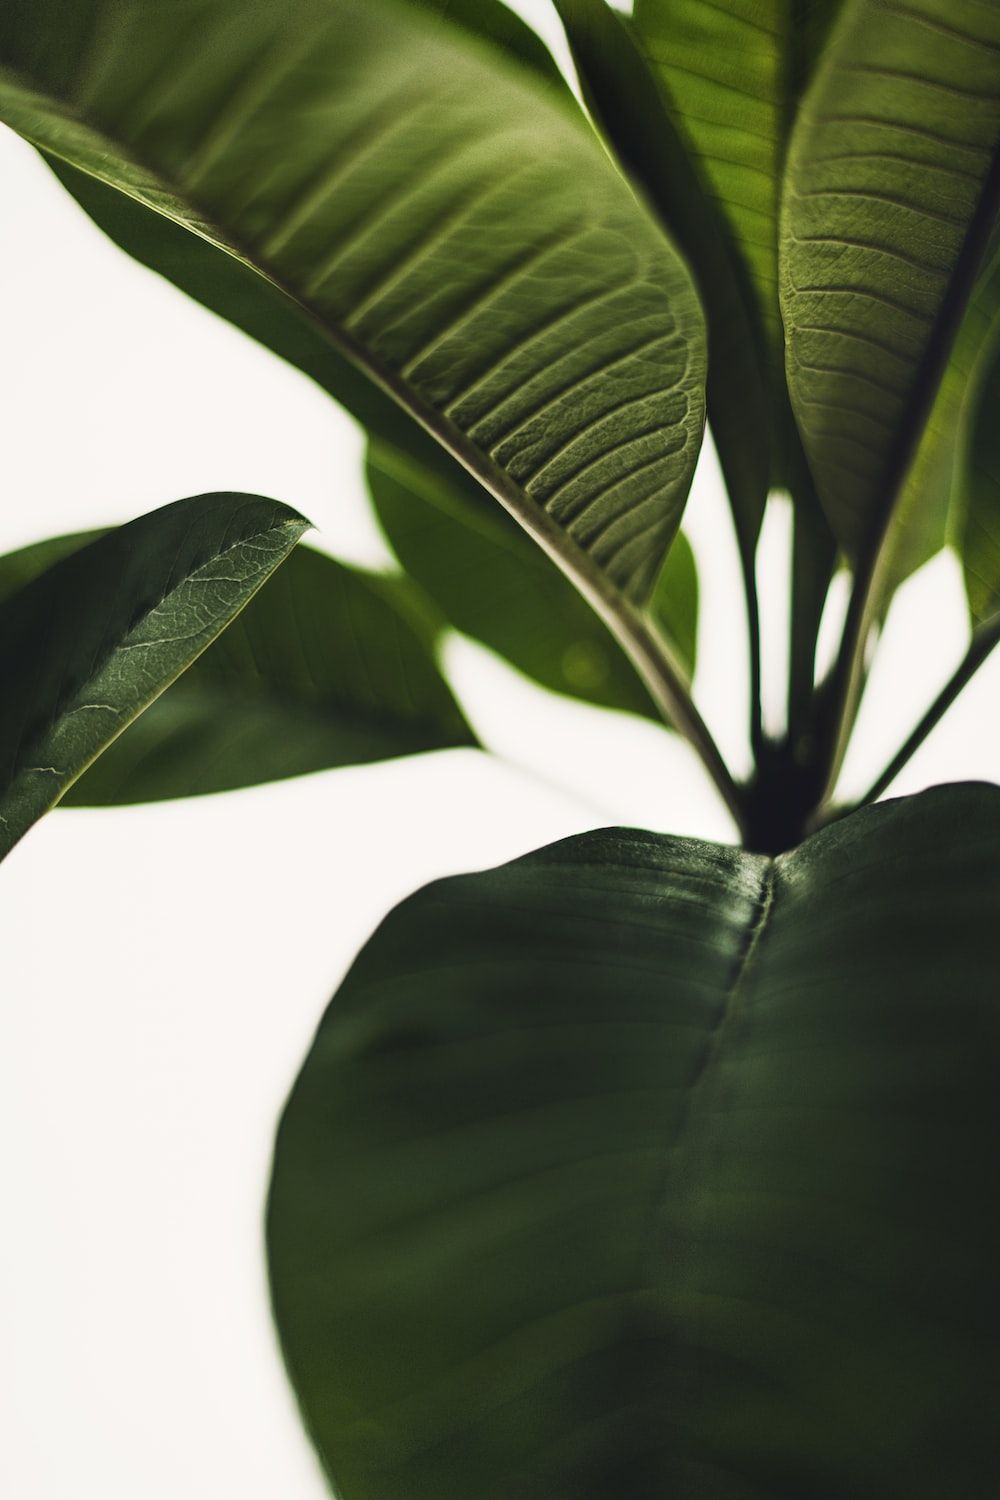  Grüne Blätter Hintergrundbild 1000x1500. Foto zum Thema Eine grüne pflanze mit großen blättern auf weißem hintergrund